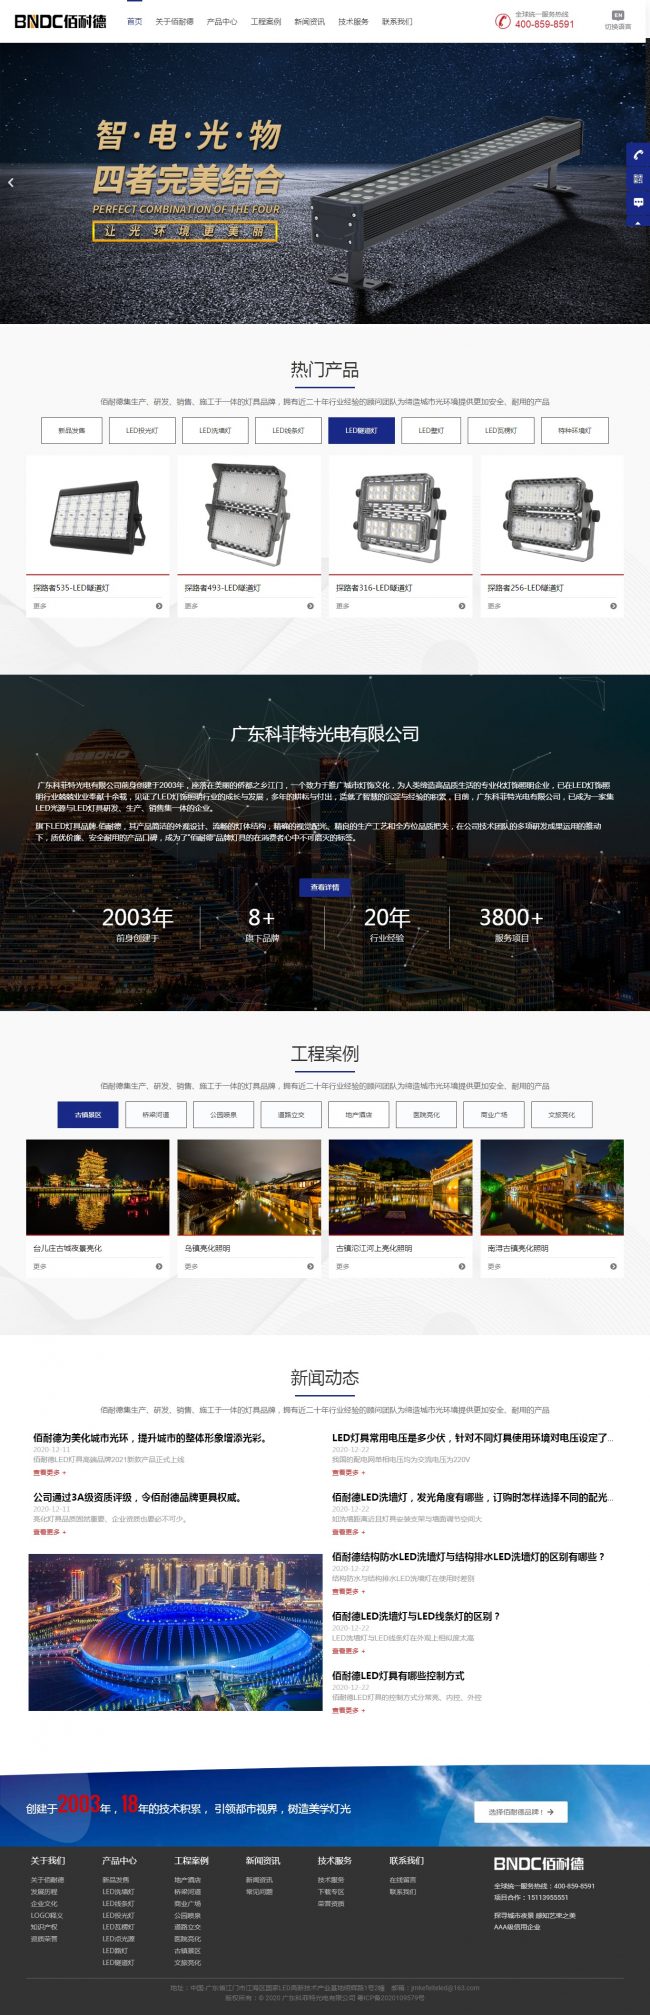 武汉康美时代网络科技有限公司 网站建设报价方案